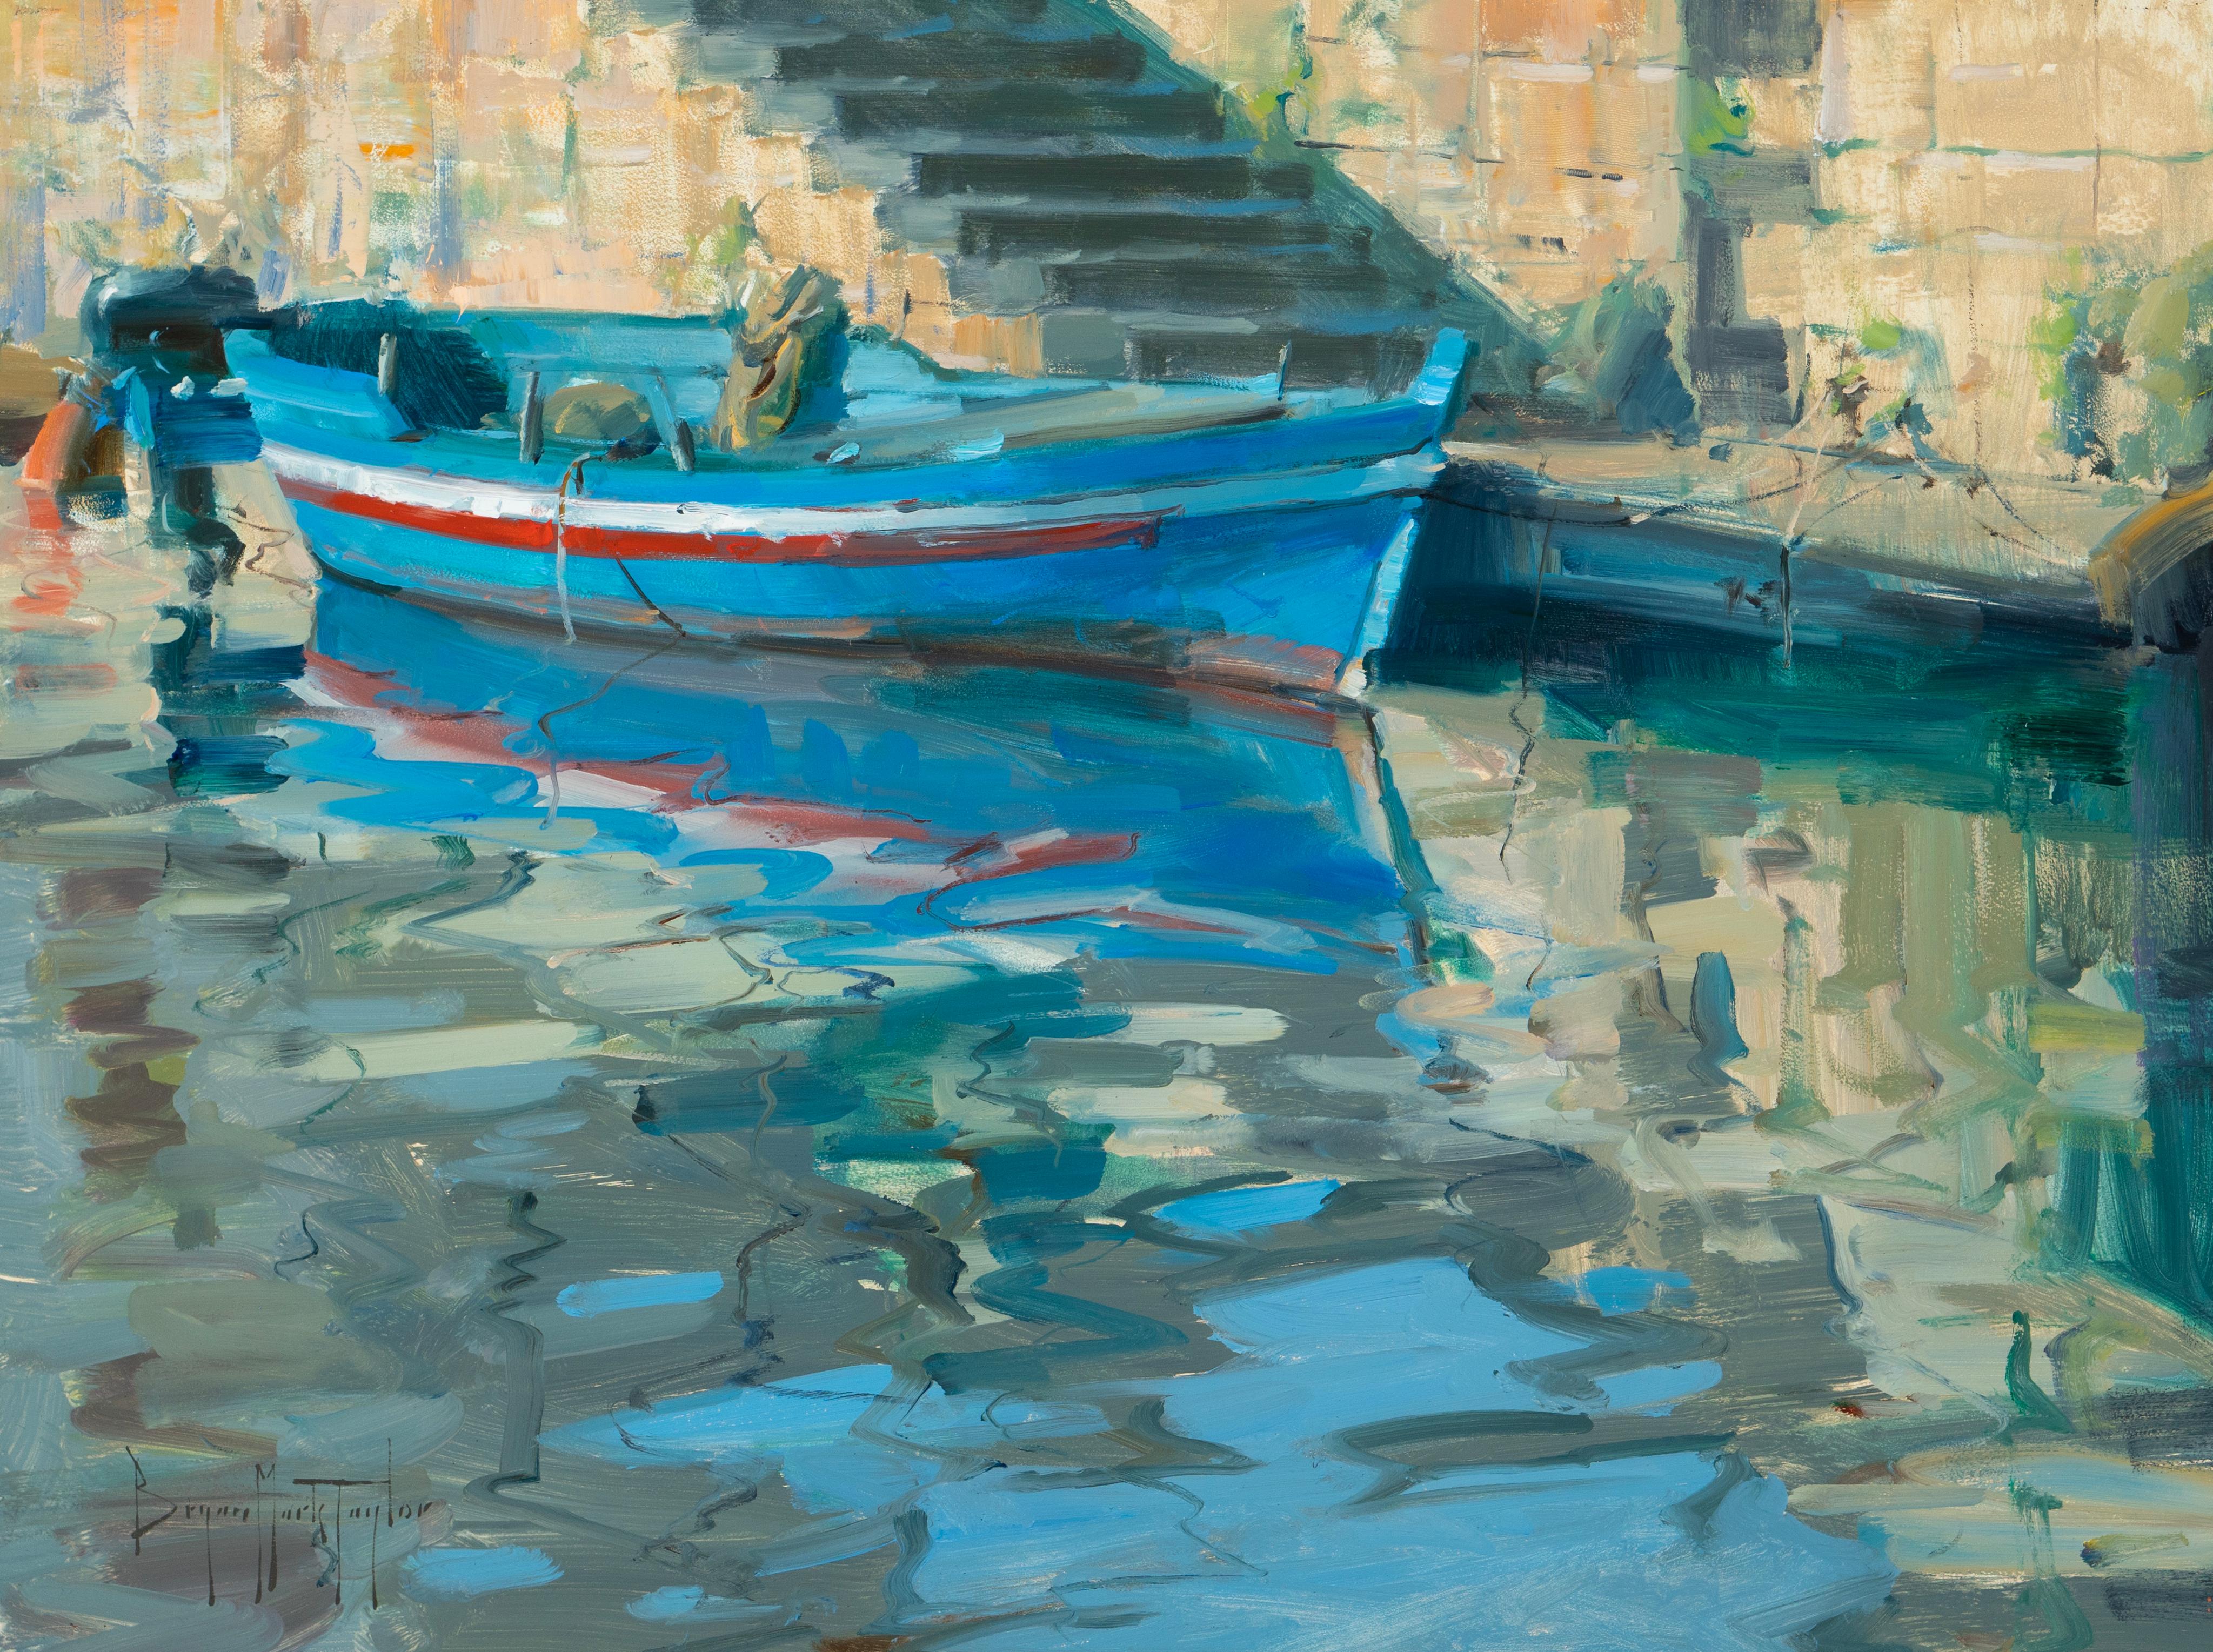 Landscape Painting Bryan Mark Taylor - bateau de pêche sicilien en plein air, huile d'Italie